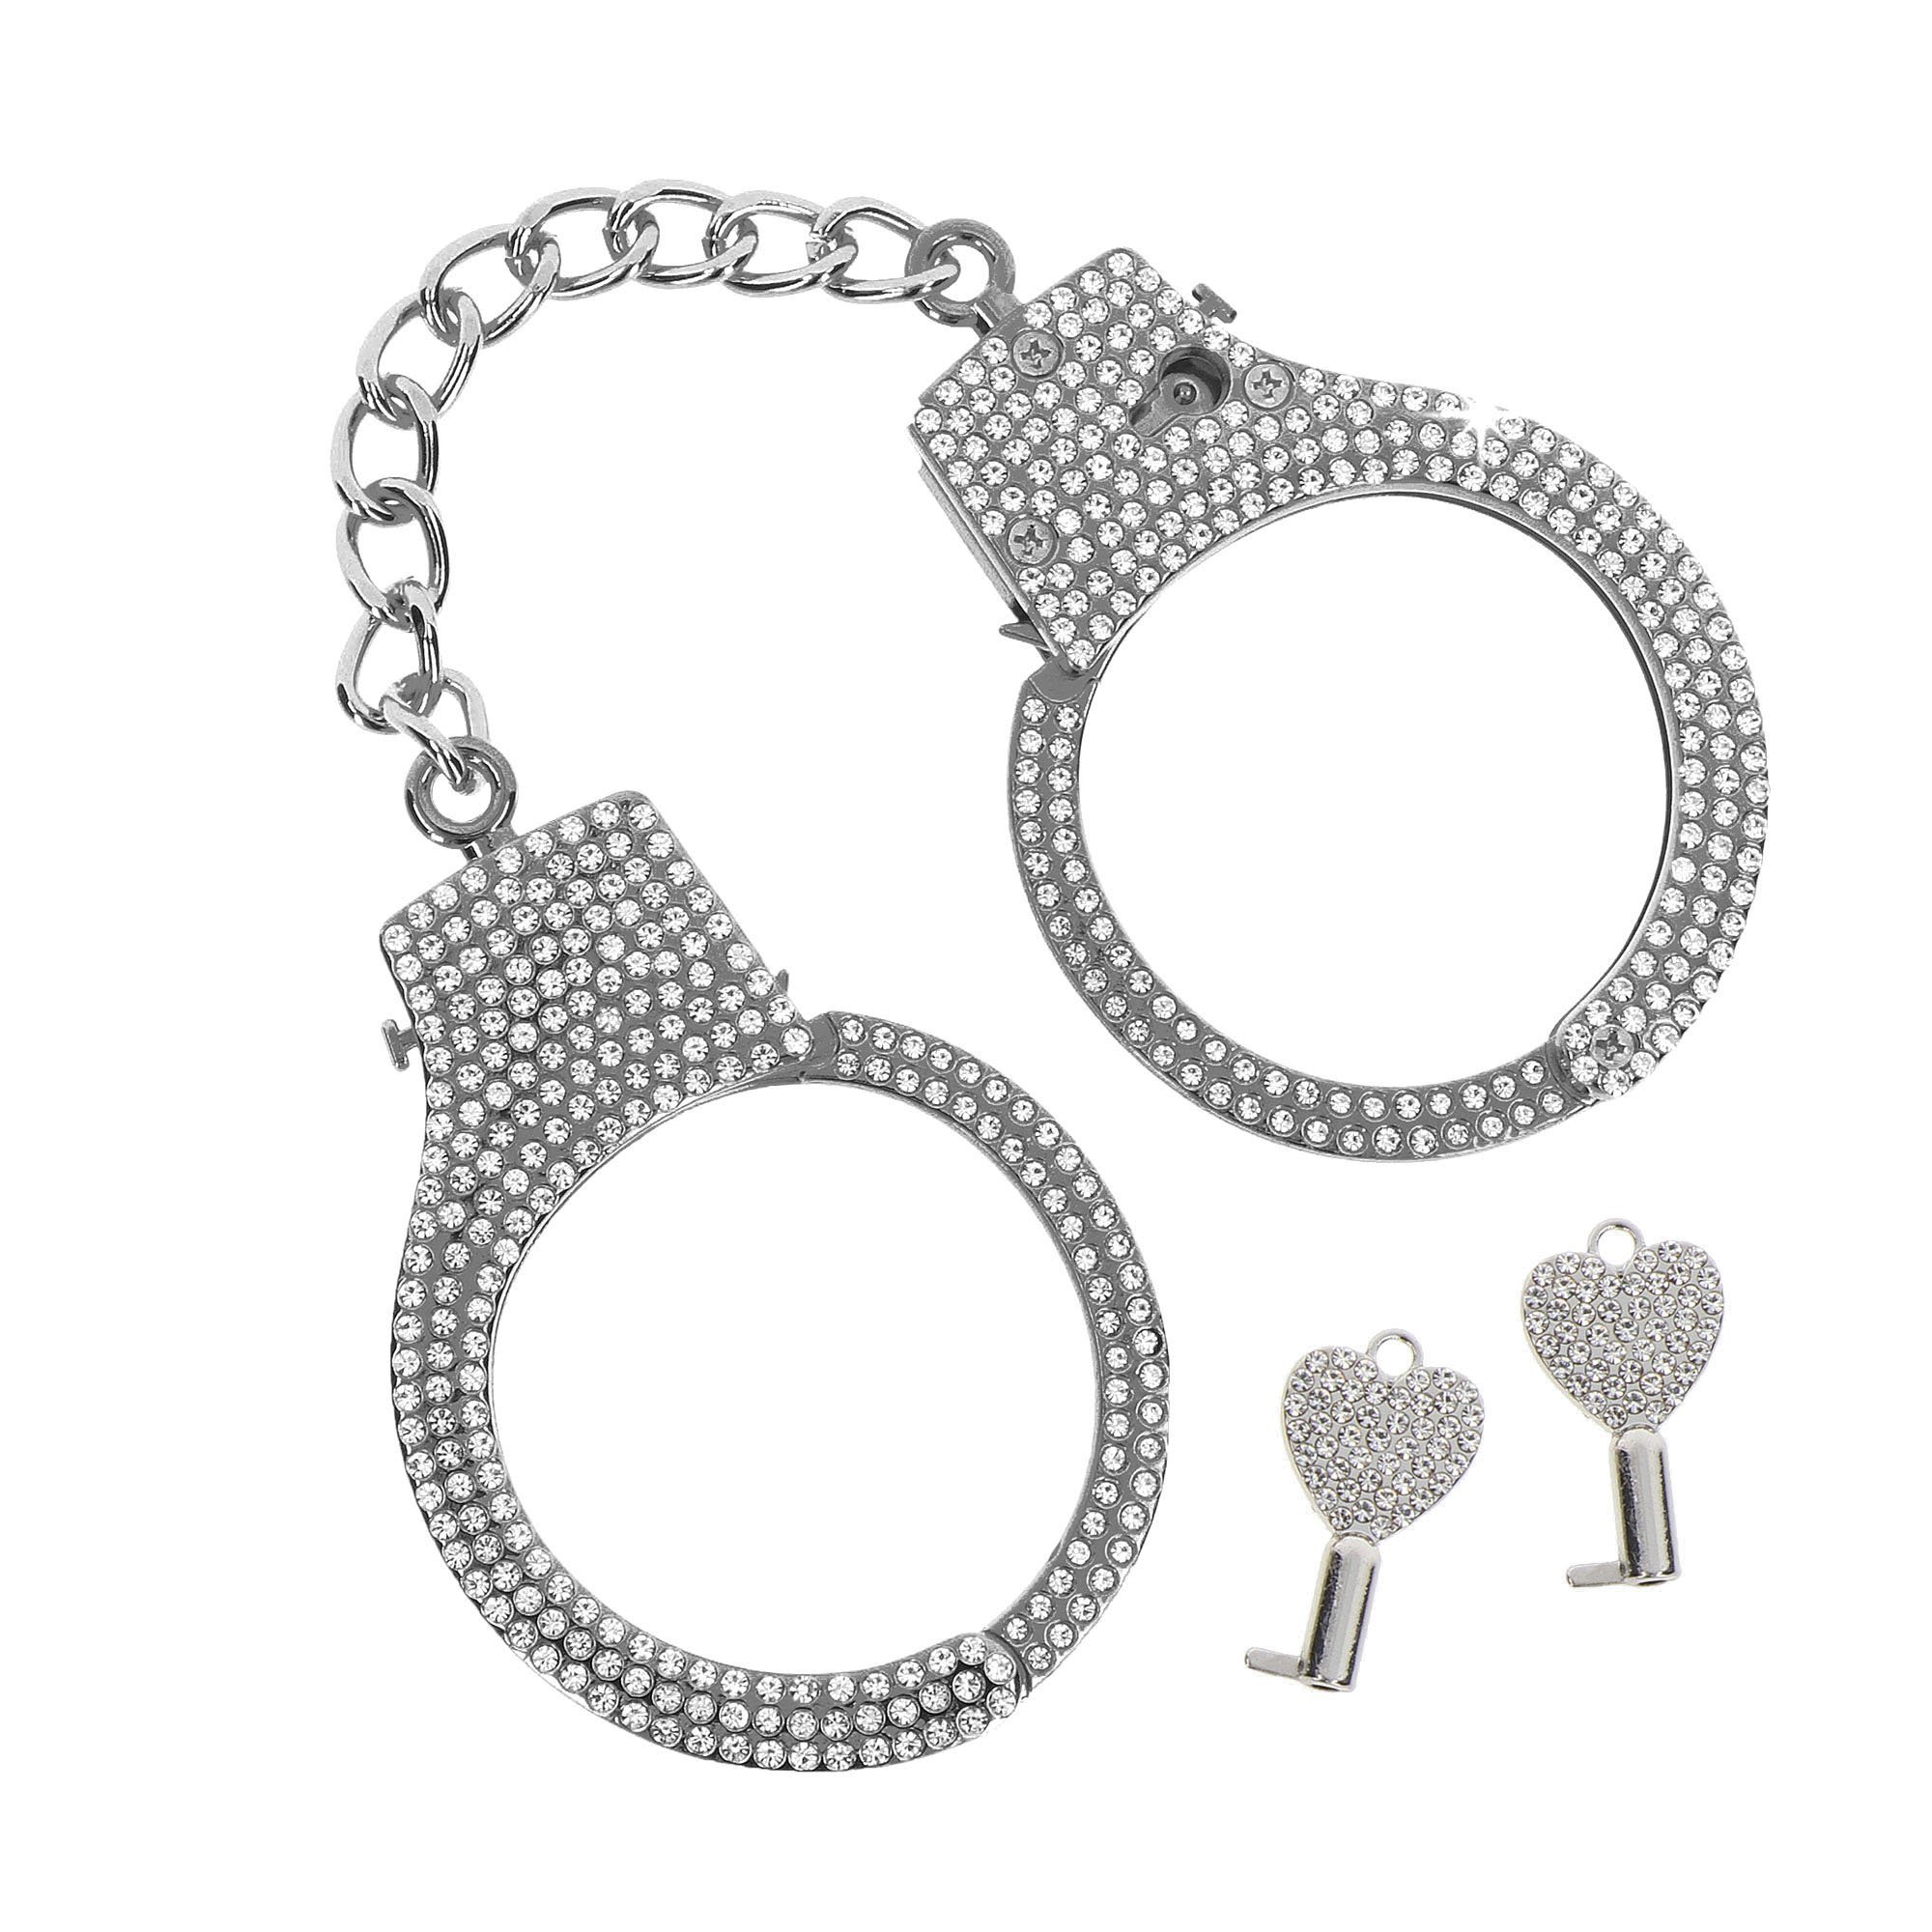 Metaliniai antrankiai „Diamond Wrist Cuffs“ - Taboom